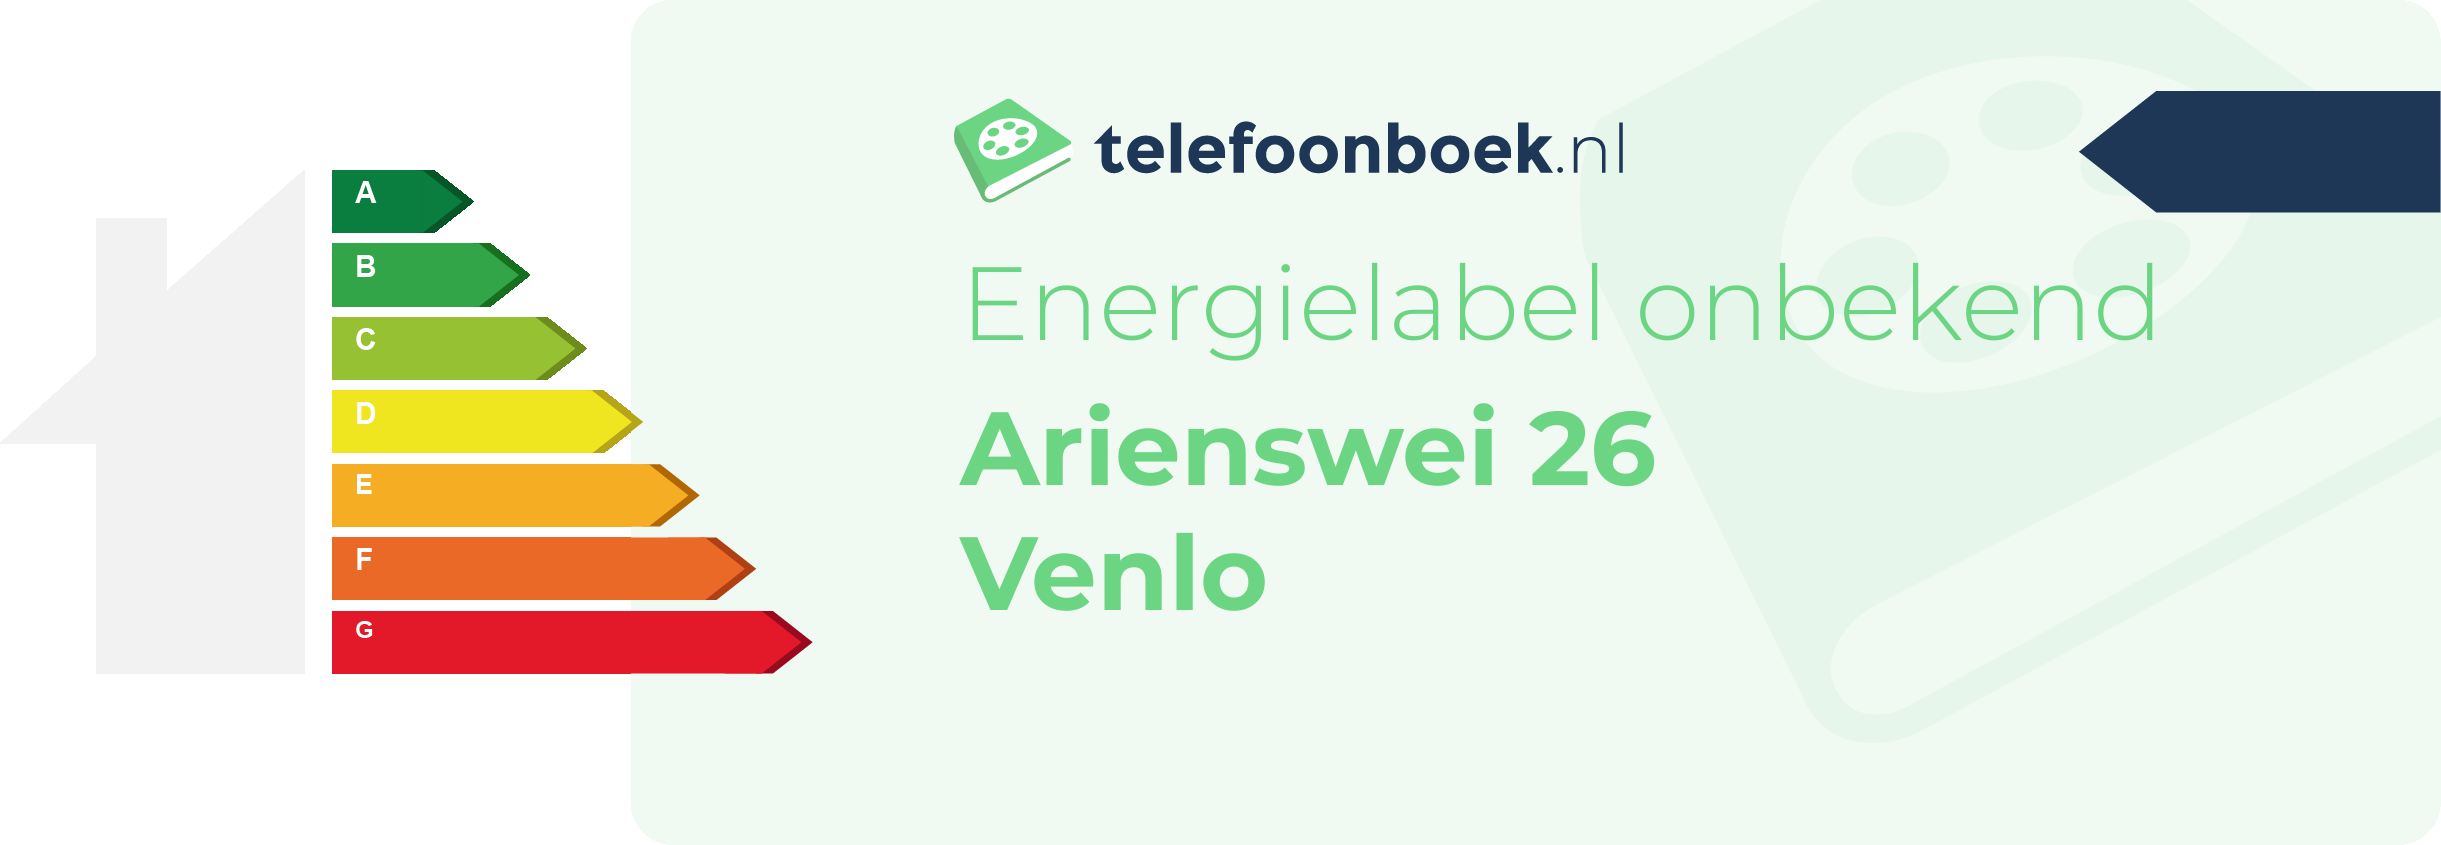 Energielabel Arienswei 26 Venlo